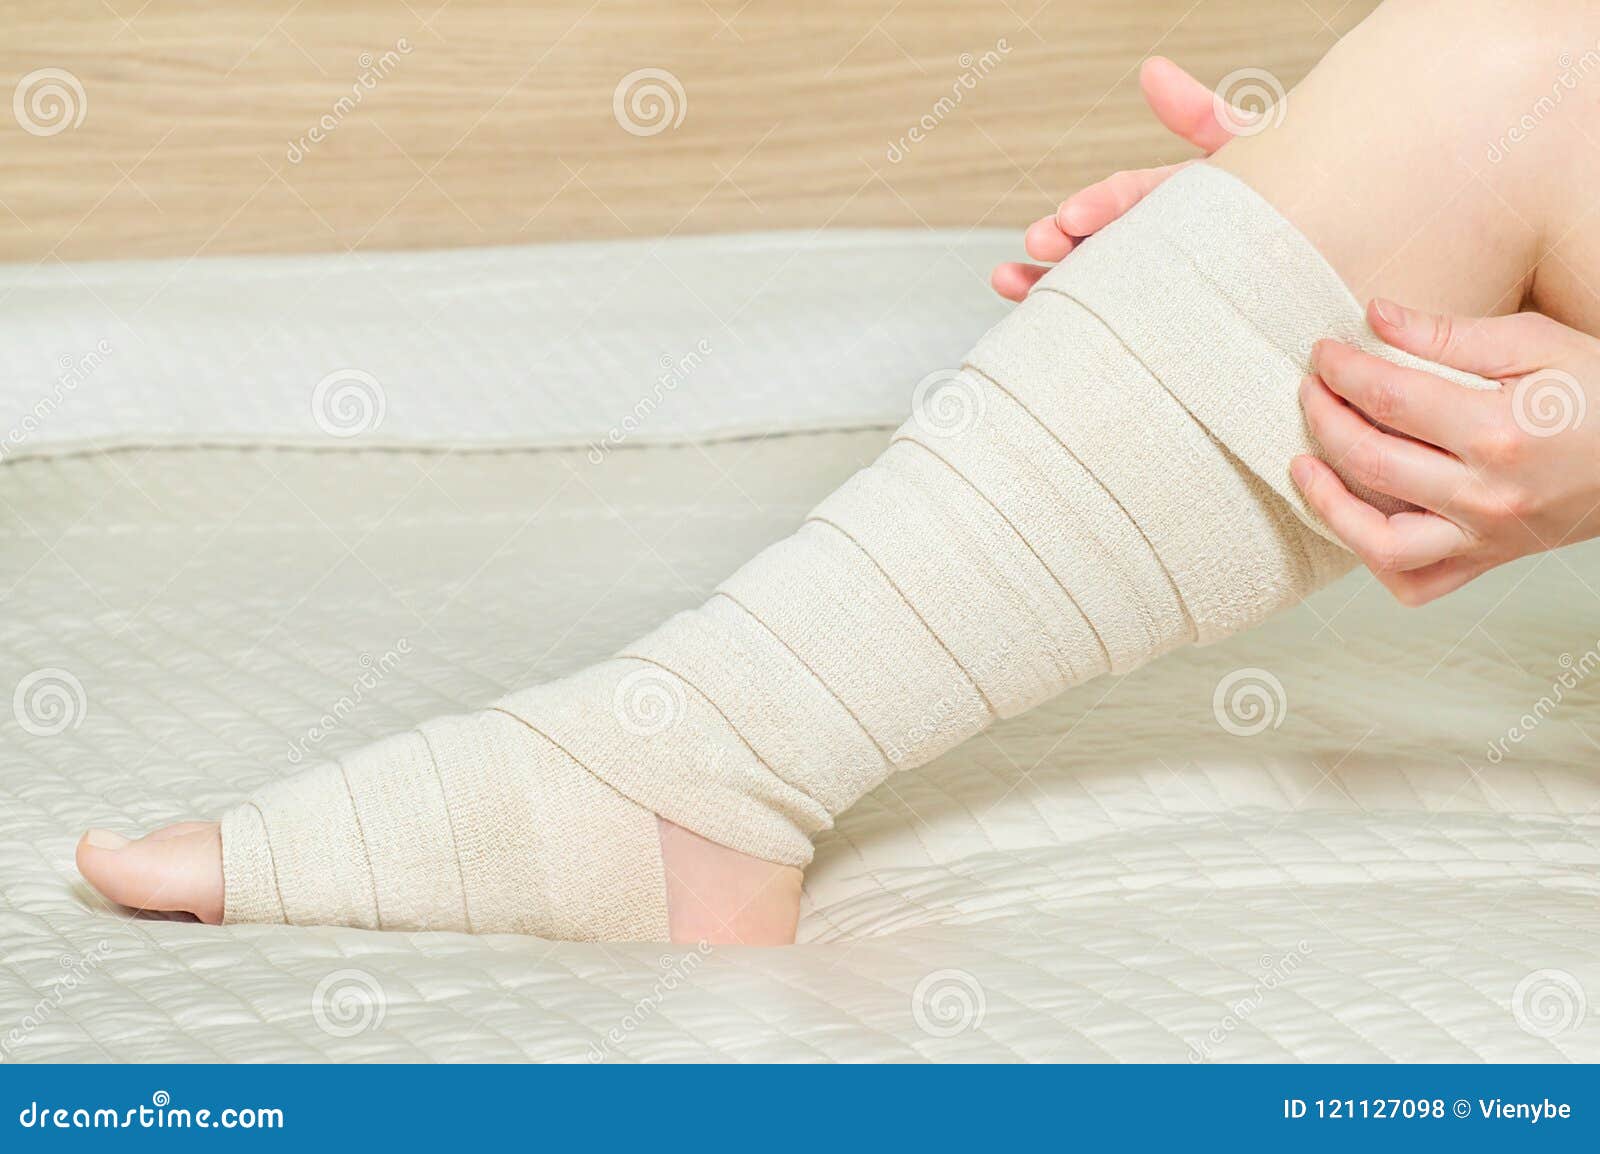 bandage elastica dupa îndepartarea varicozei)